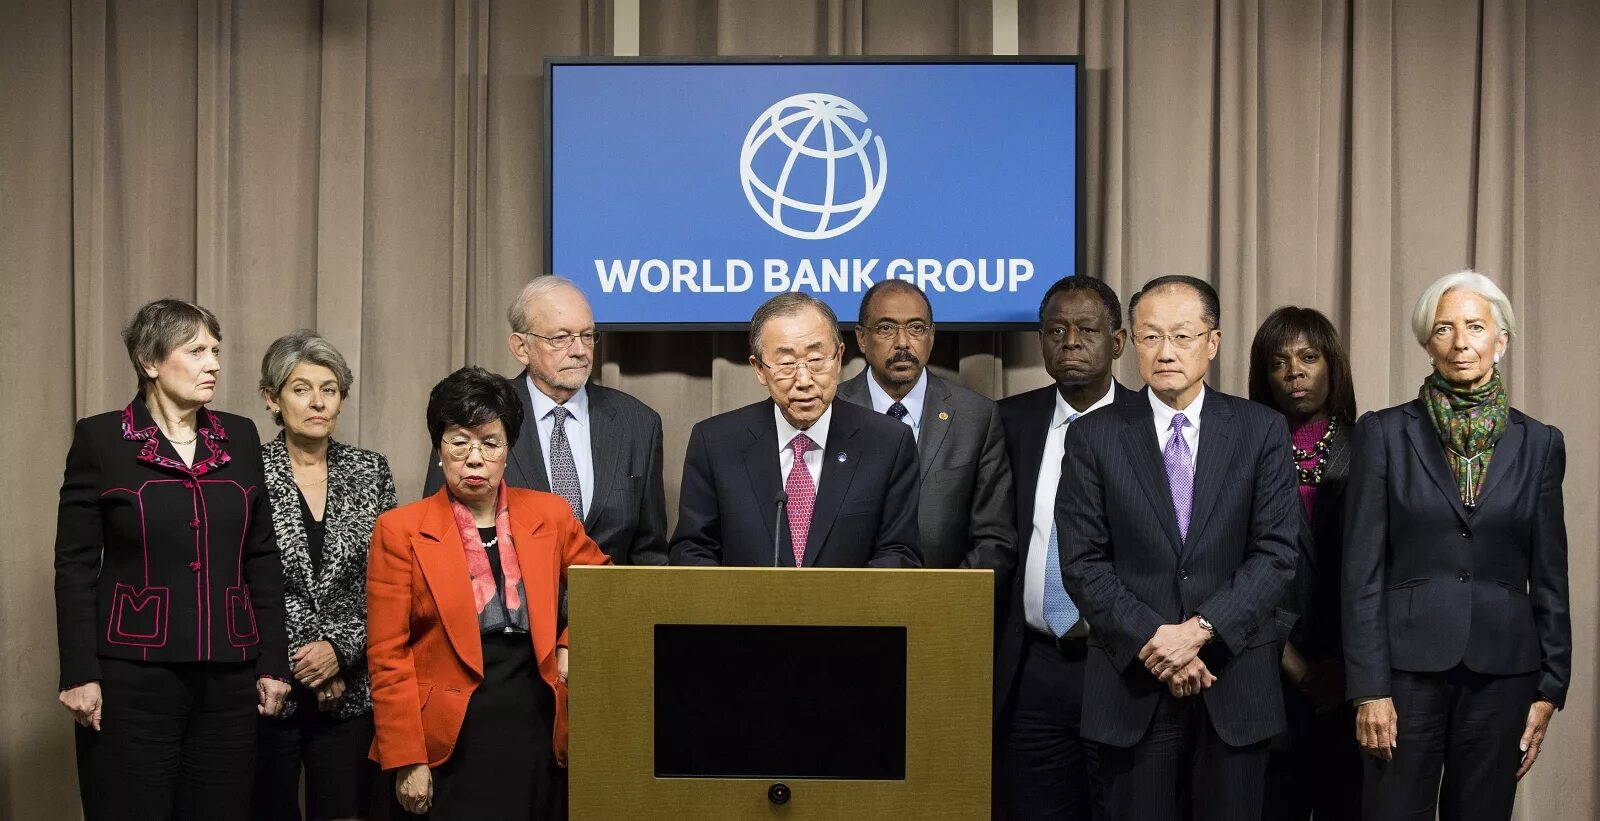 Сайт всемирного банка. Всемирный банк ООН. Всемирный банк международные организации. Группа Всемирного банка. Всемирный банк картинки.